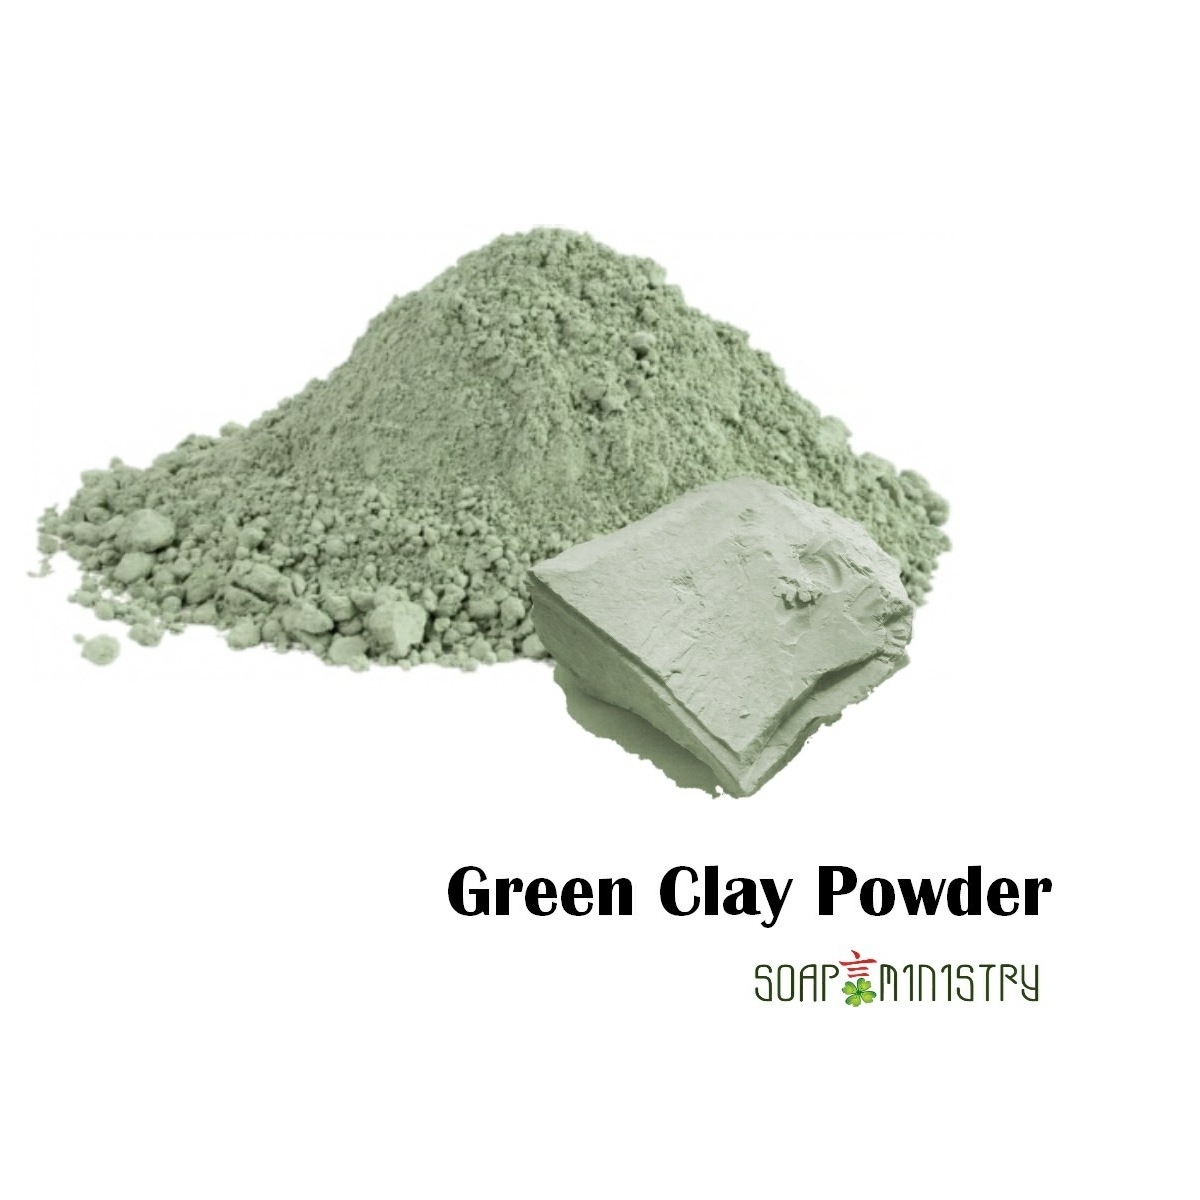 Green Clay Powder 250g